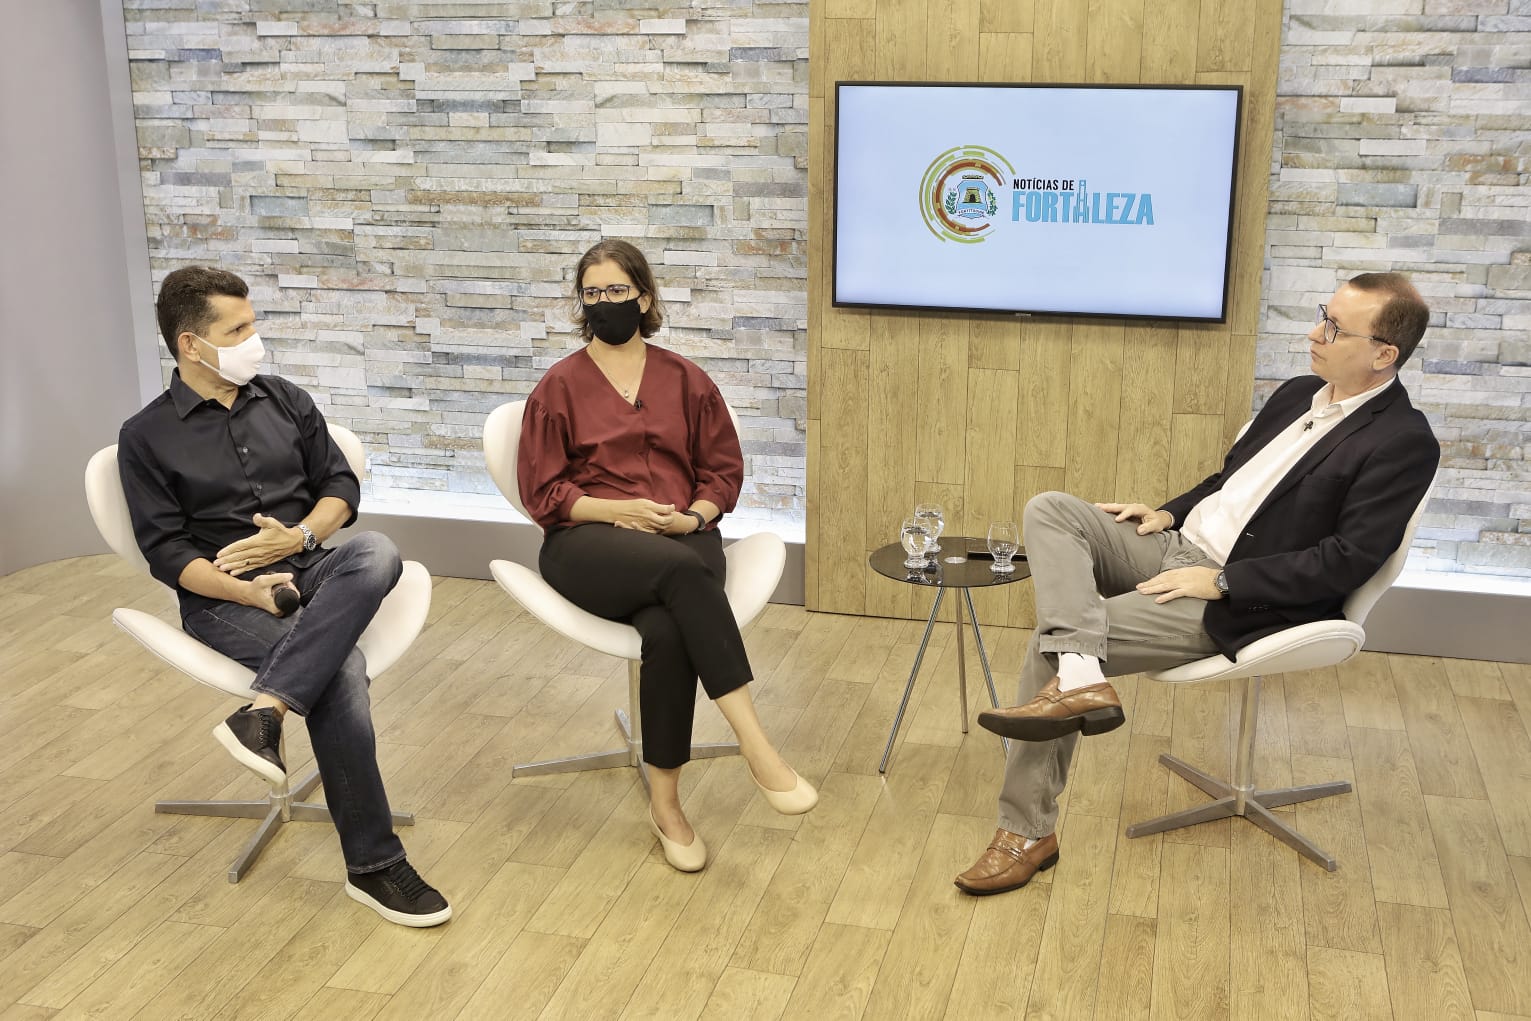 Secretários Erick Vasconcelos e Manuela Nogueira falam das obras do setor turístico em entrevista nesta quinta-feira, na TV Terra do Sol